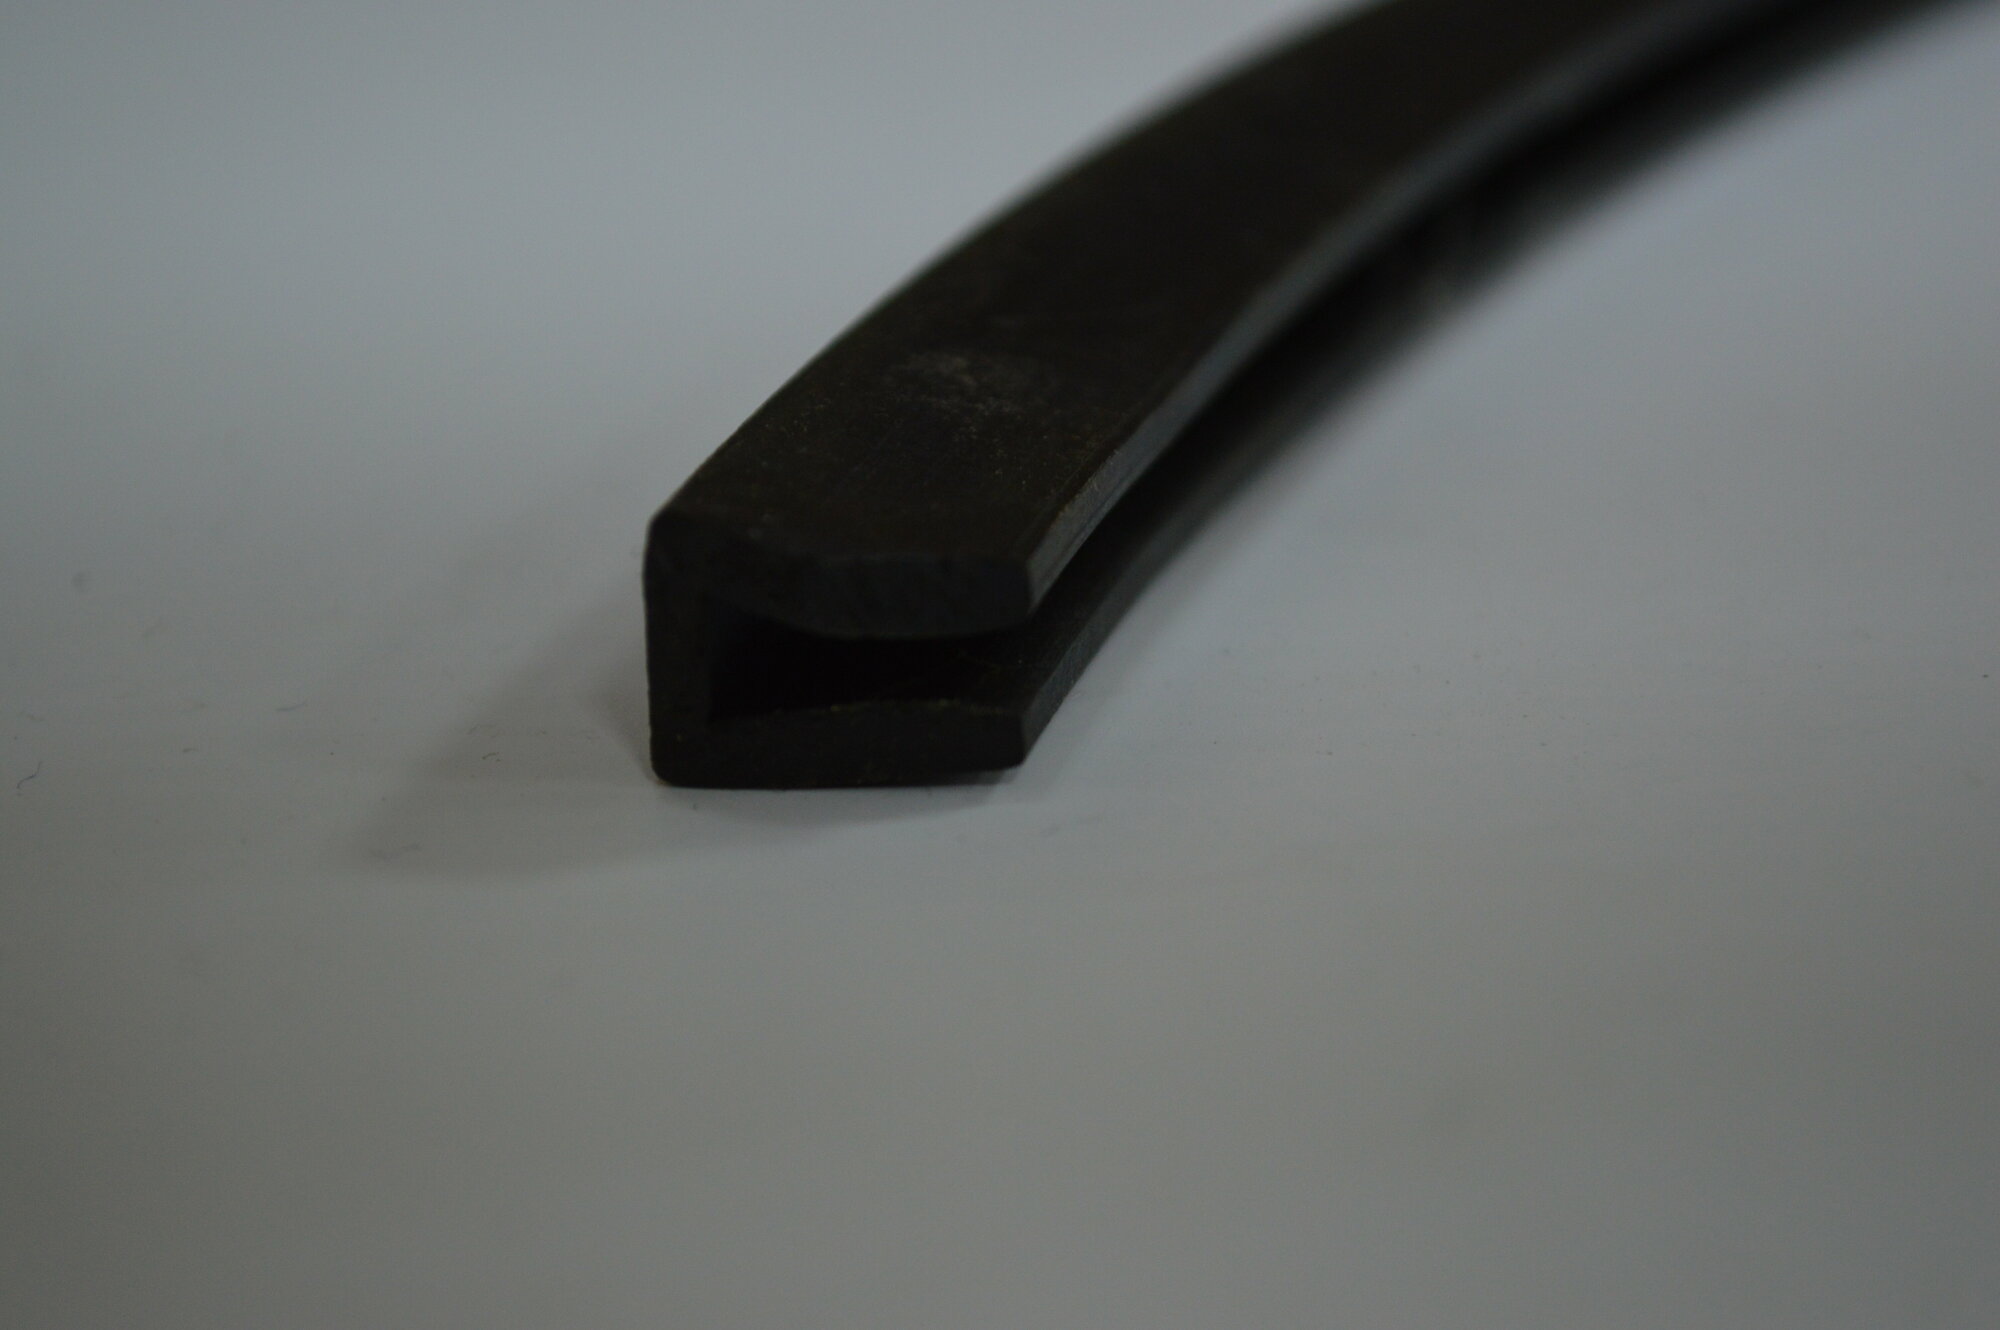 Профиль резиновый черный П-образный для уплотнения стекол и метала. Толщина стекла 8 мм. Длина 3 метра.